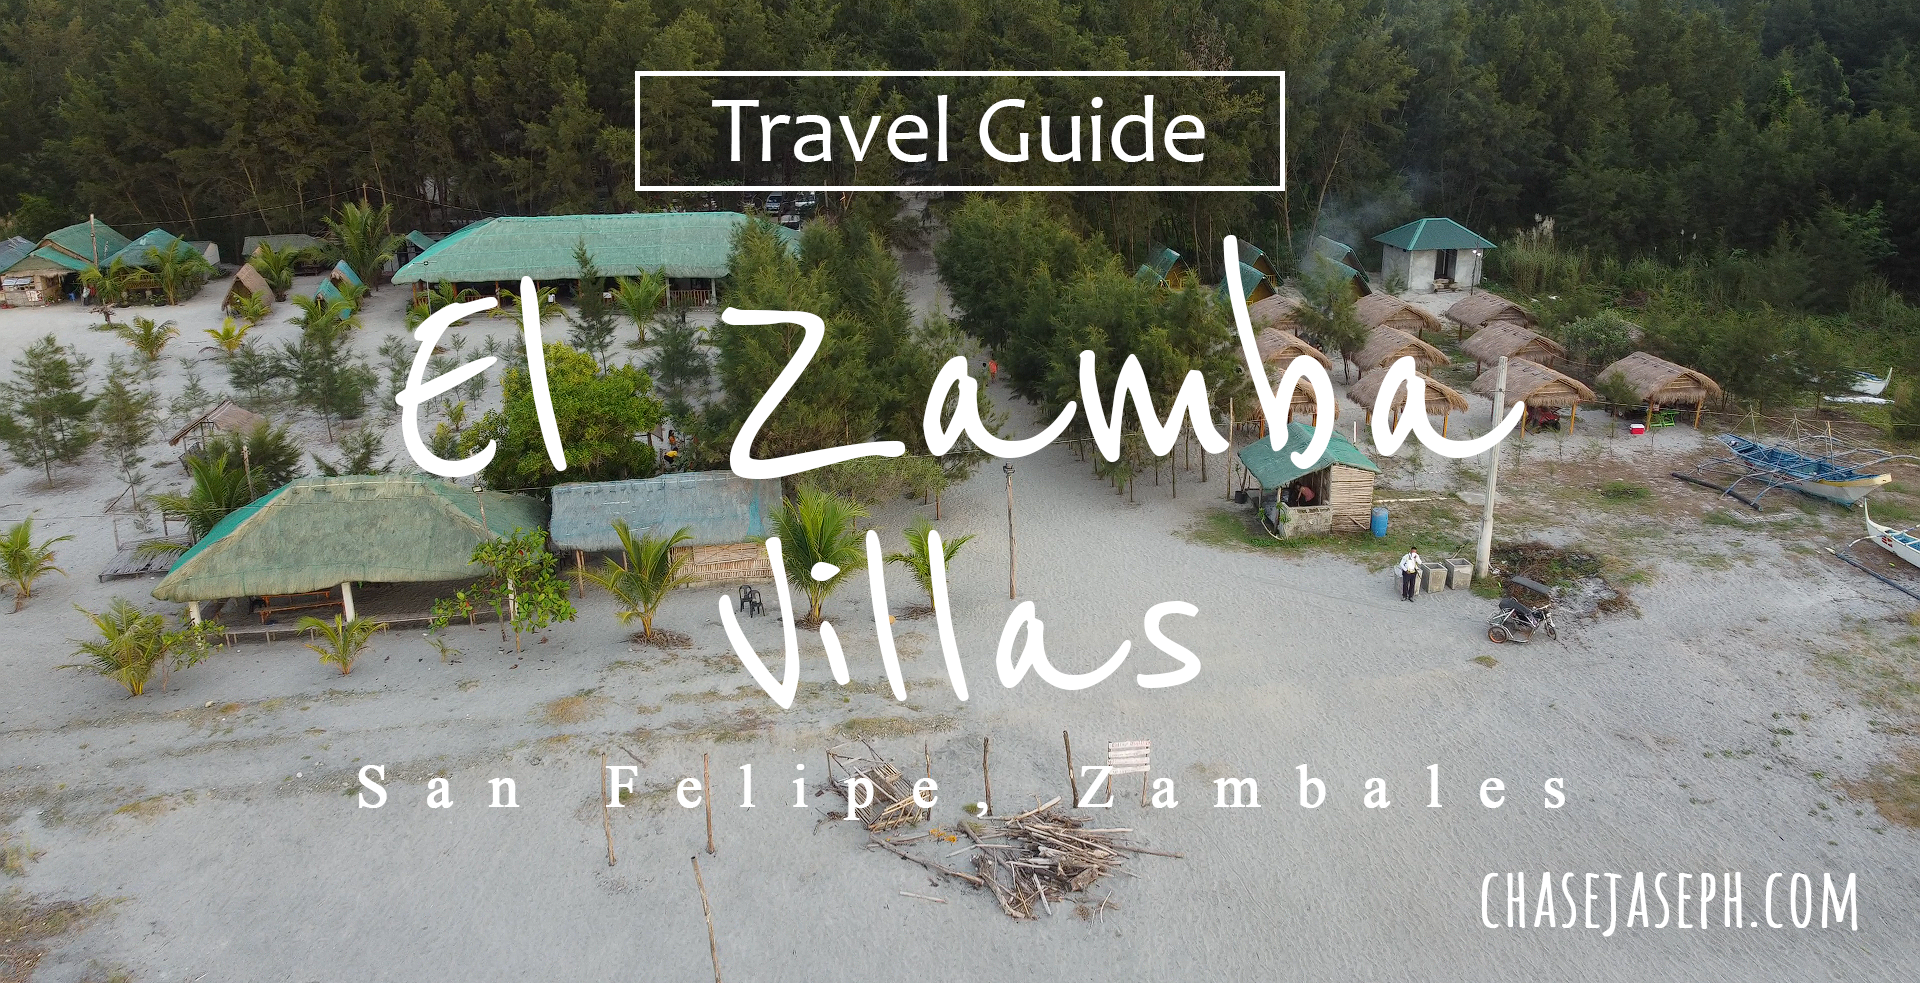 El Zamba Villas - San Felipe, Zambales (Travel Guide)